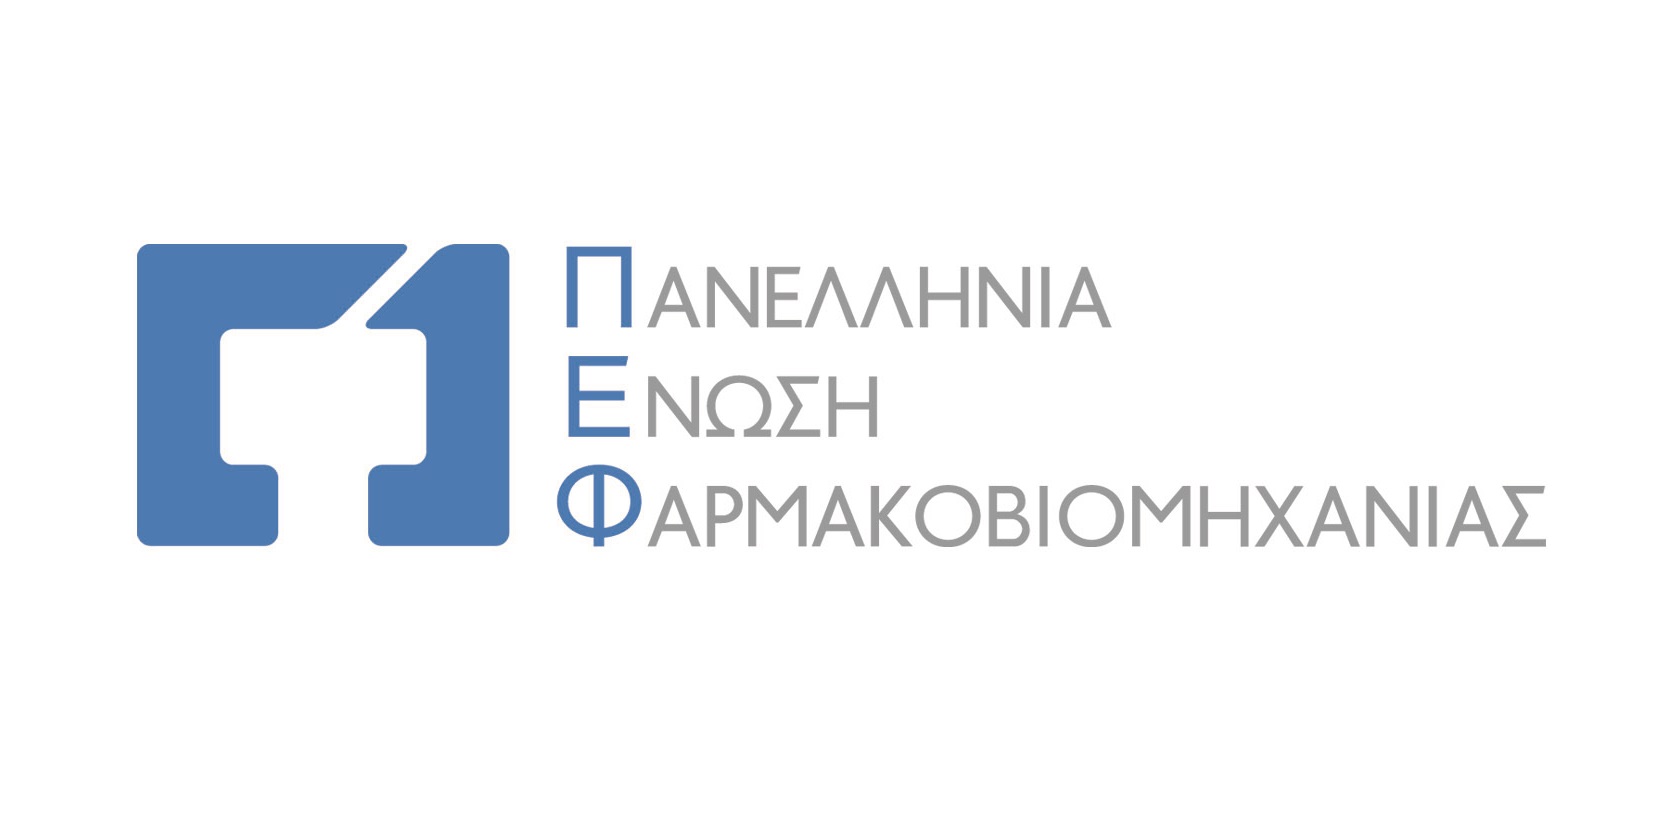 Εγγυάται την σταθερότητα στη δημόσια υγεία η ελληνική φαρμακοβιομηχανία